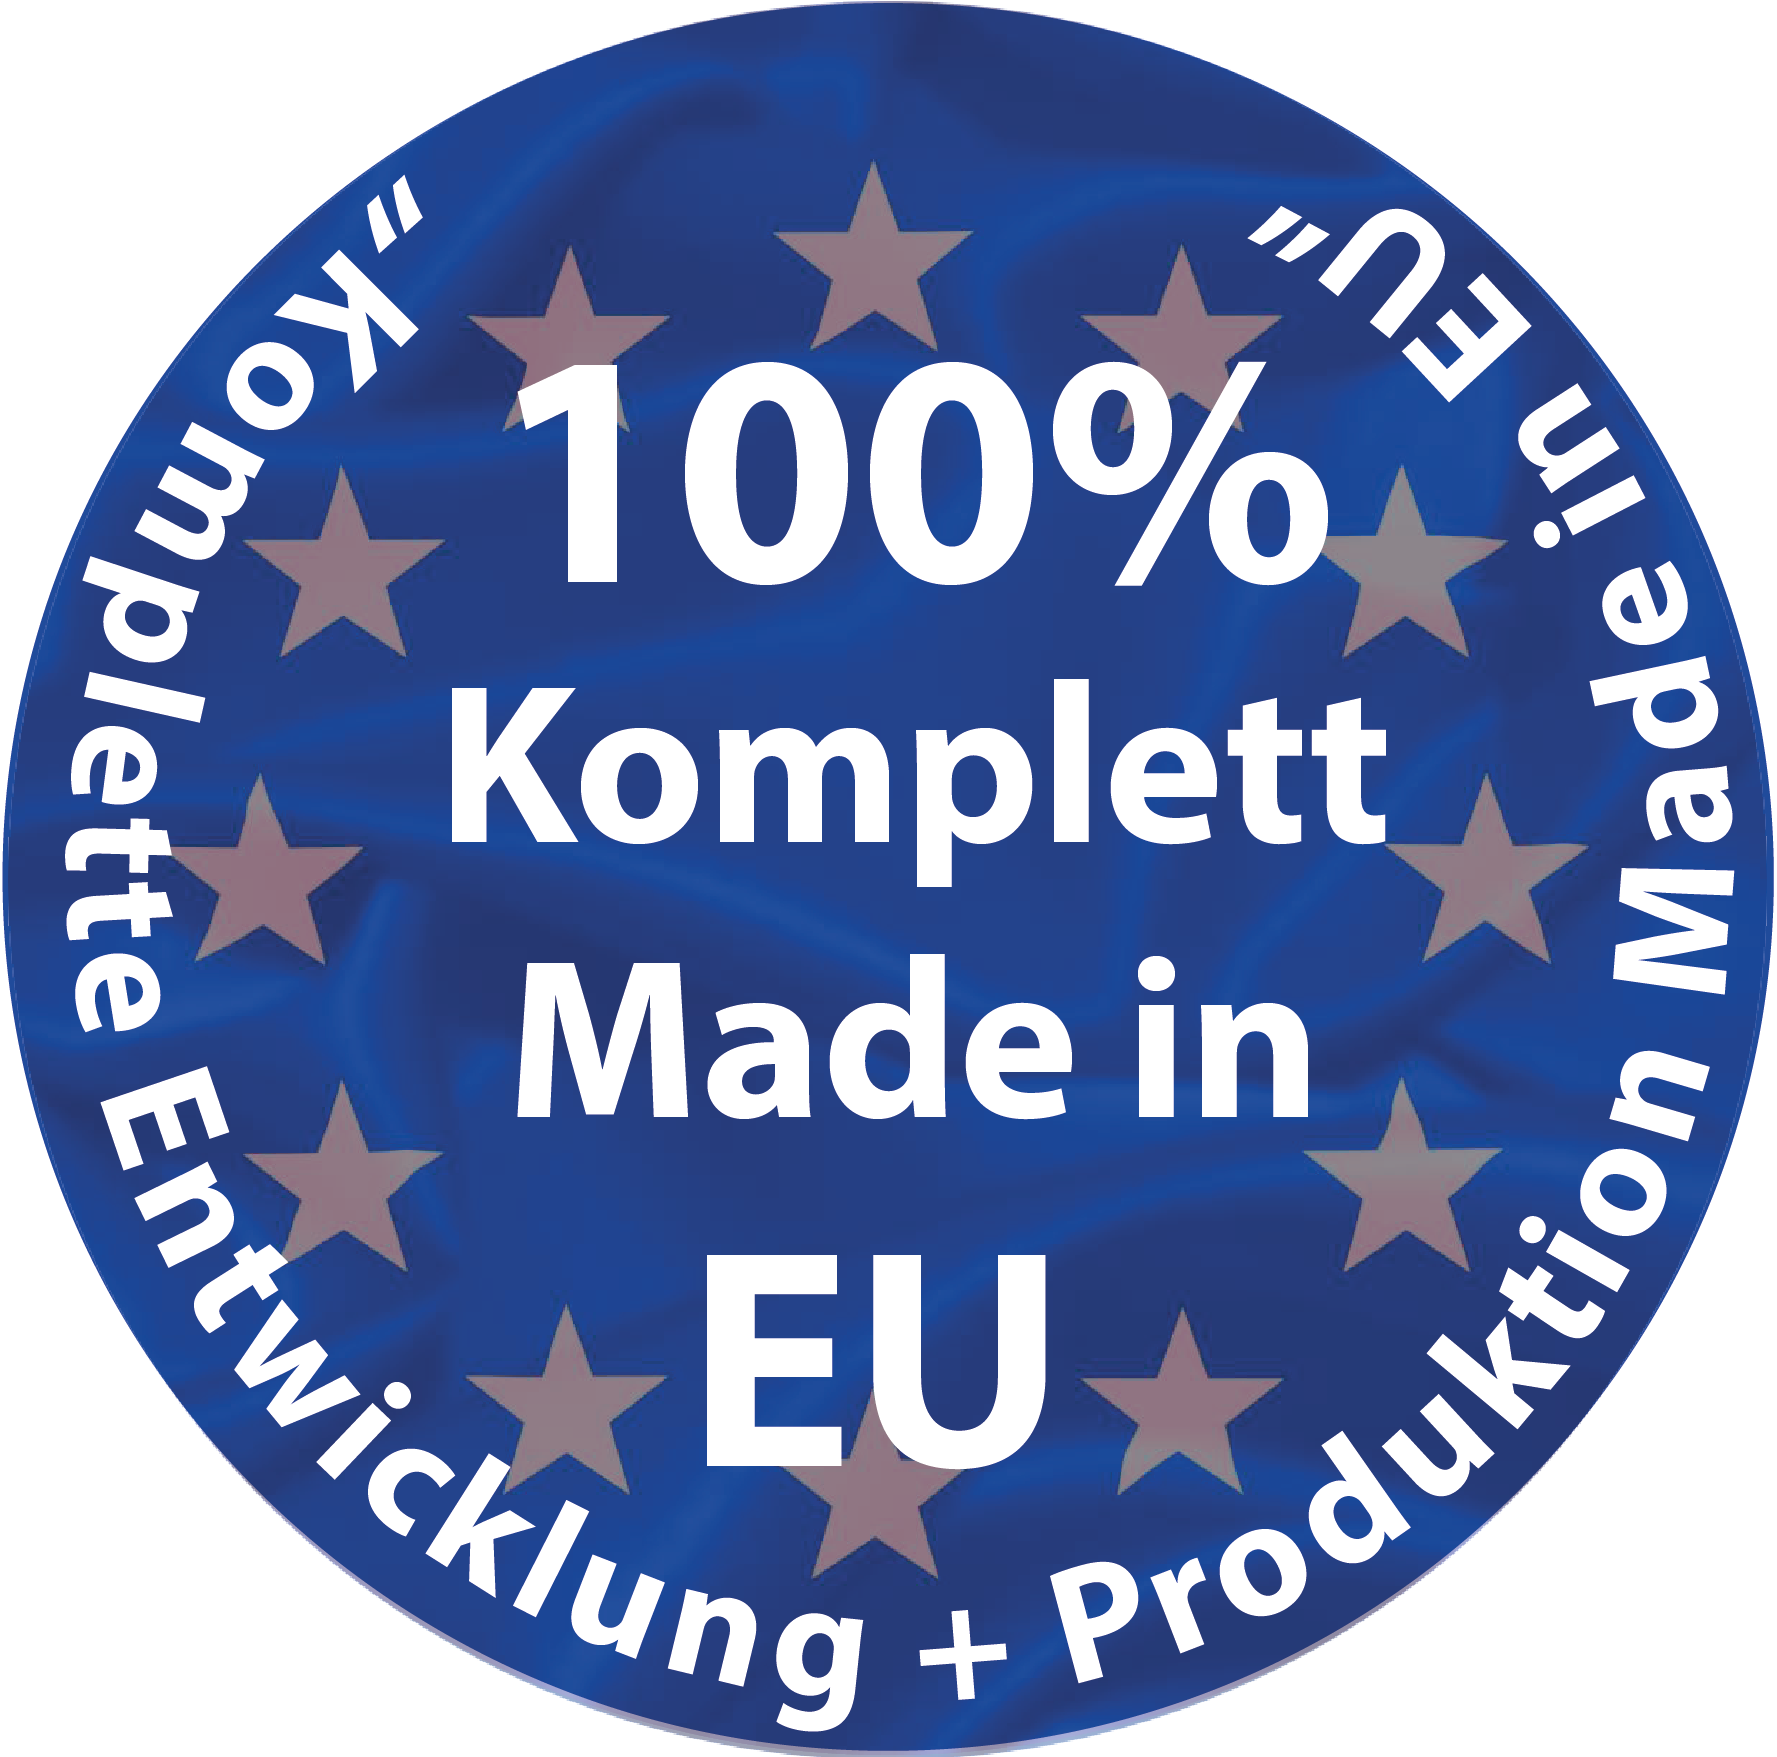 100 % komplett Made in EU